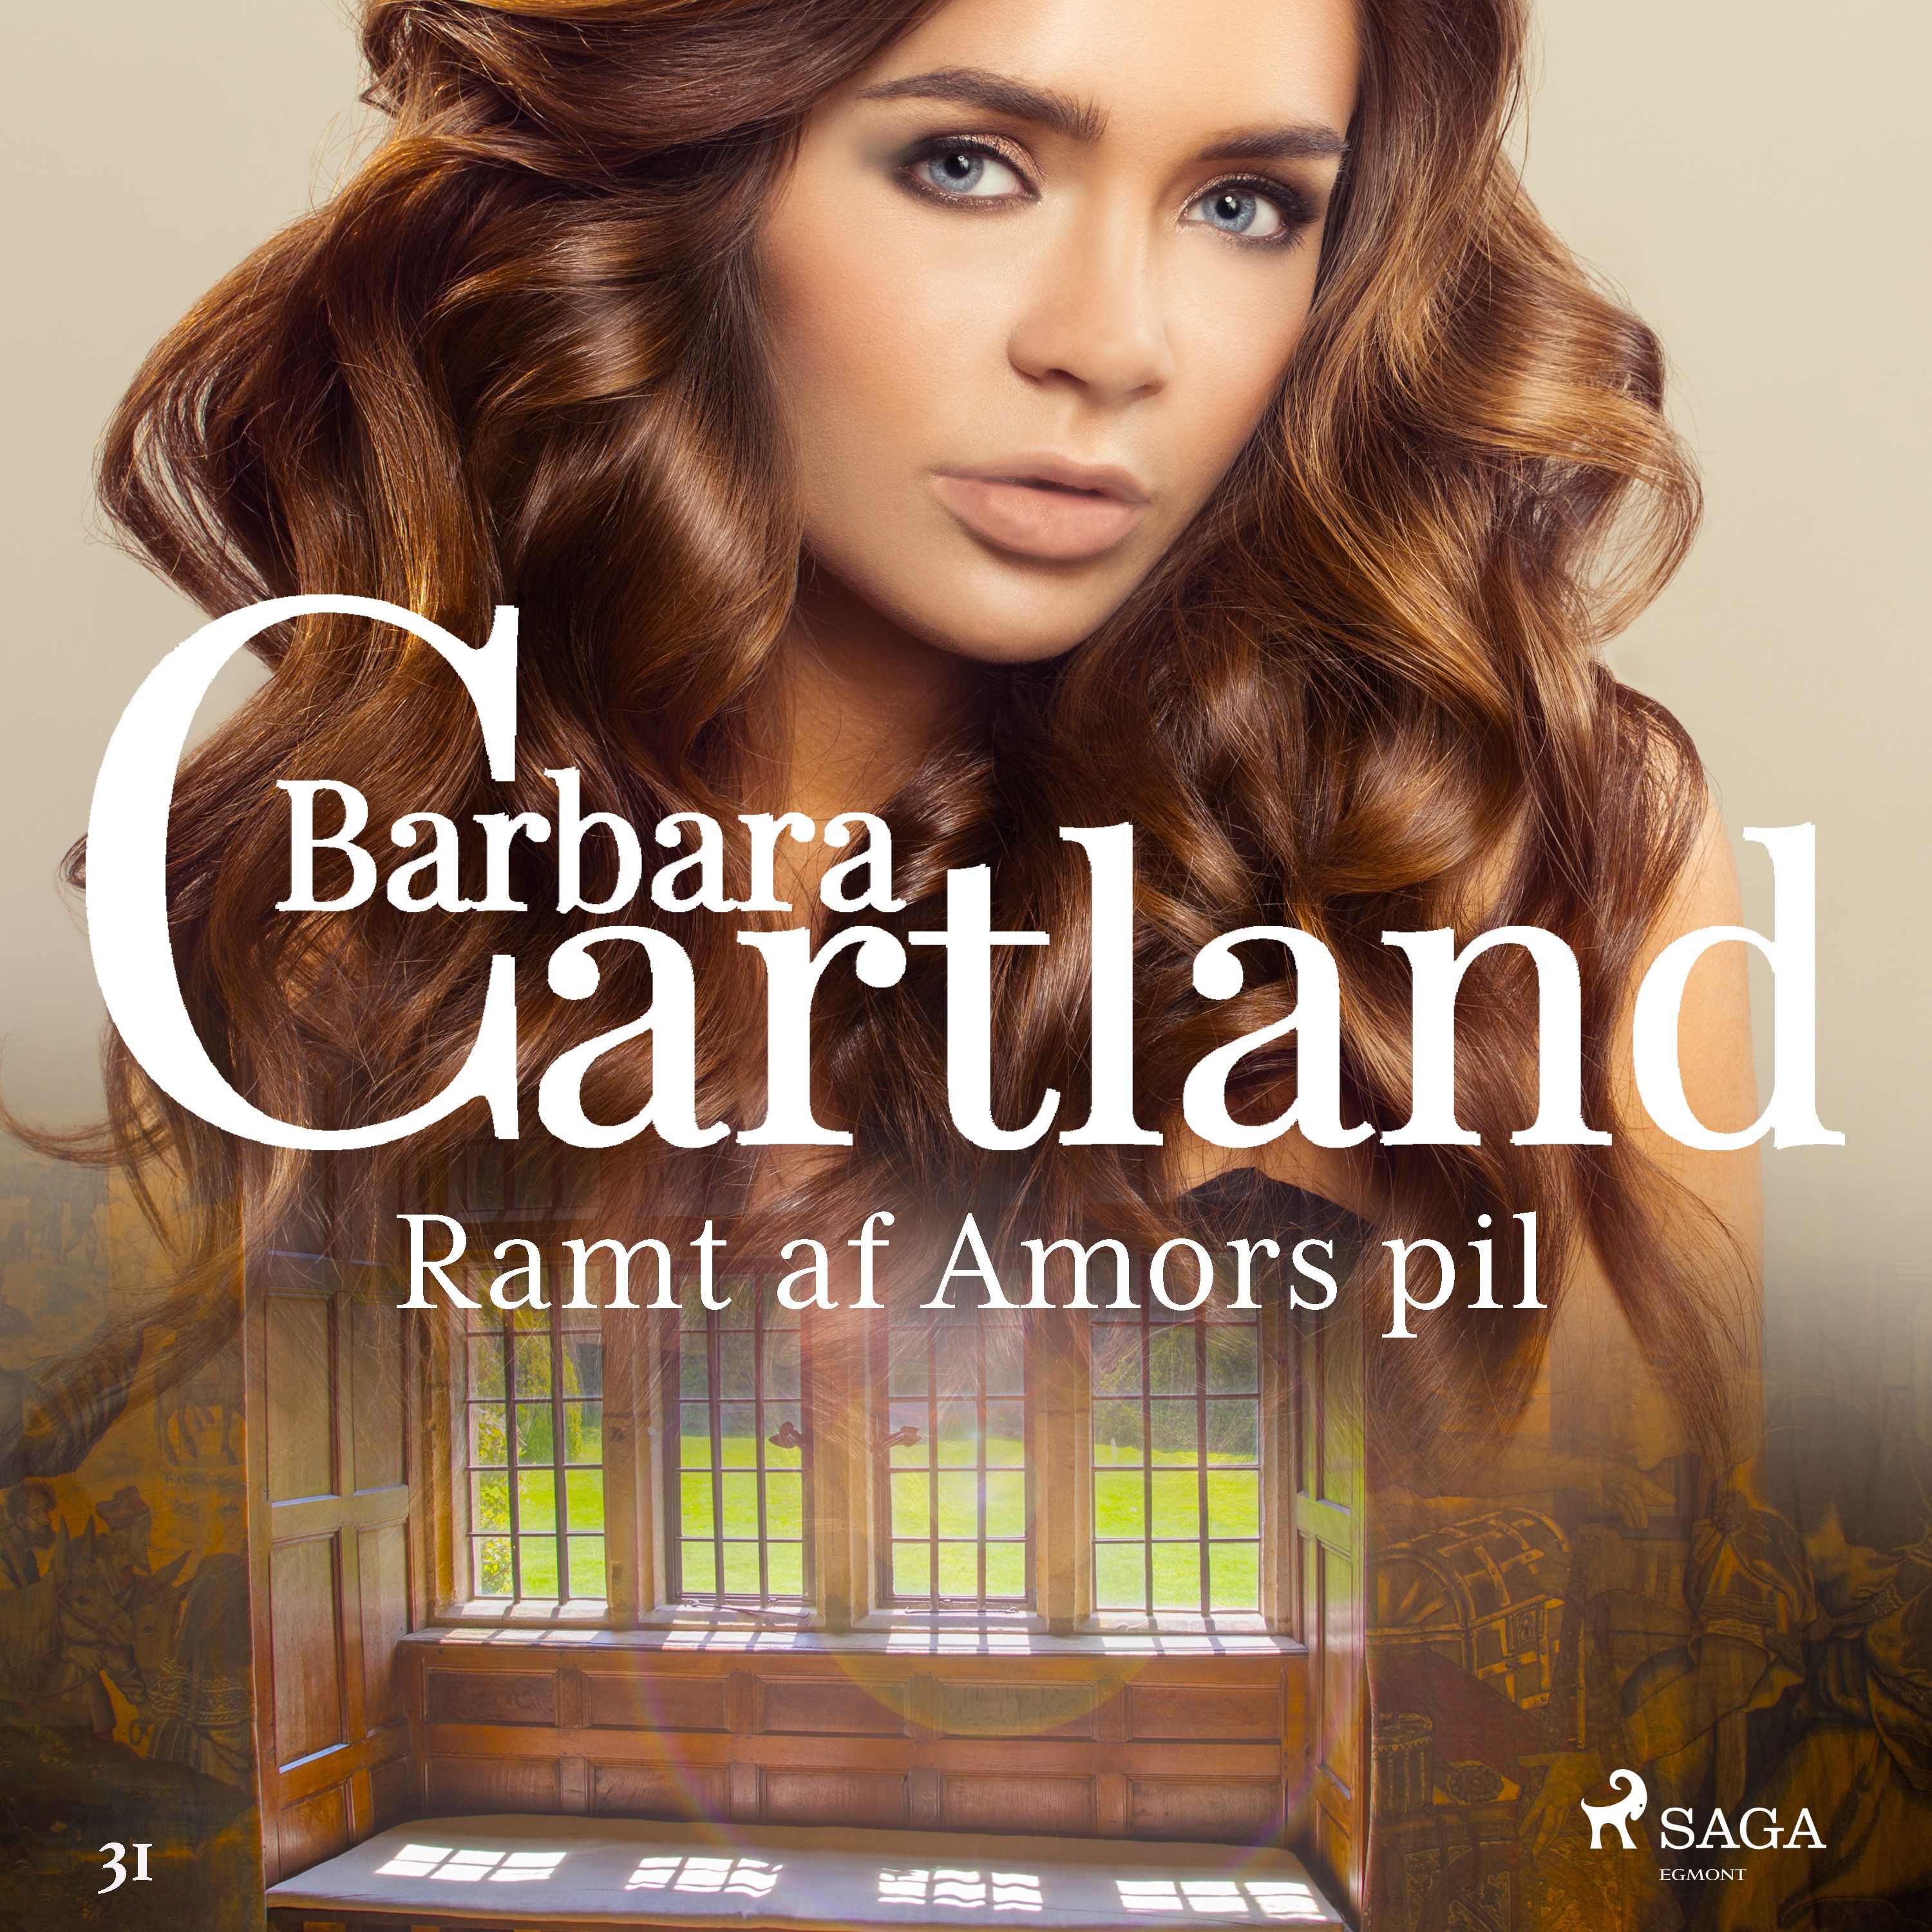 Ramt af Amors pil, ljudbok av Barbara Cartland